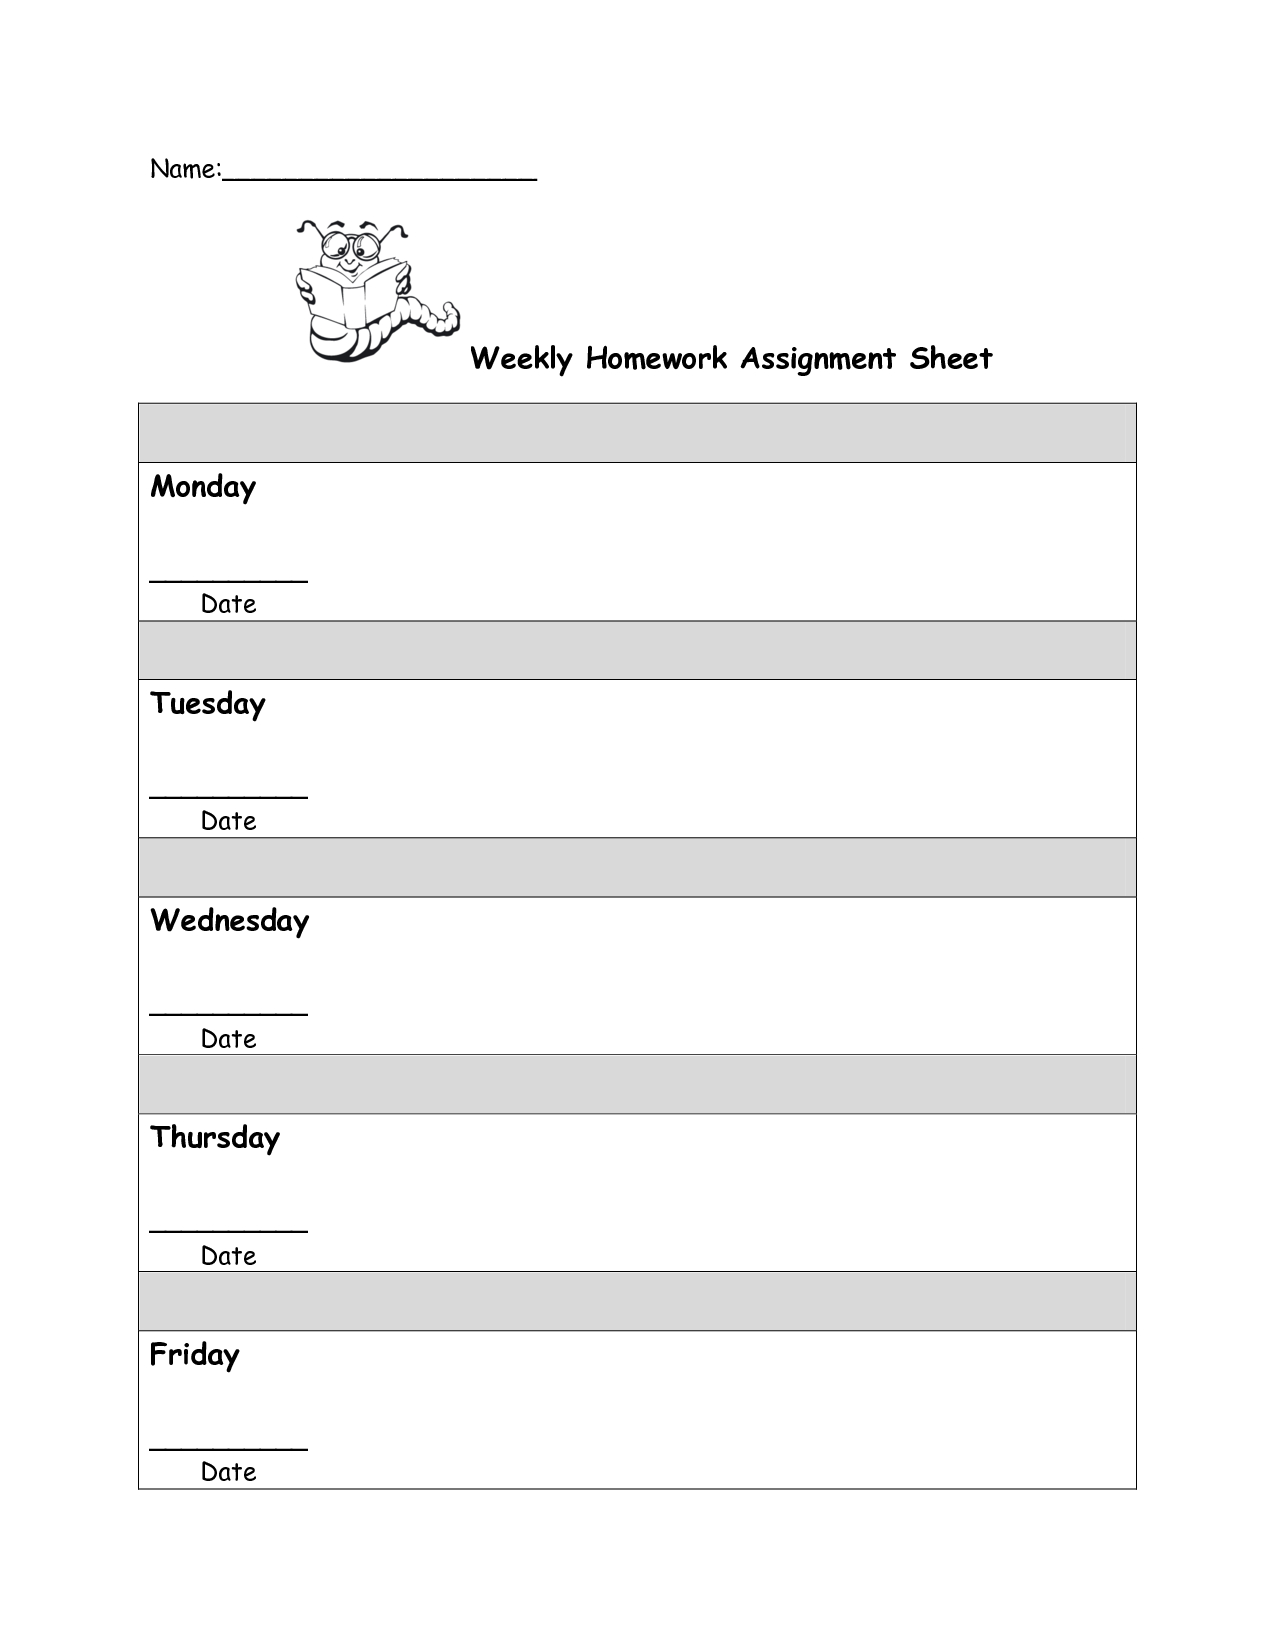 Free Homework Assignment Sheet Template Cakepins | Reading - Free Printable Homework Assignment Sheets